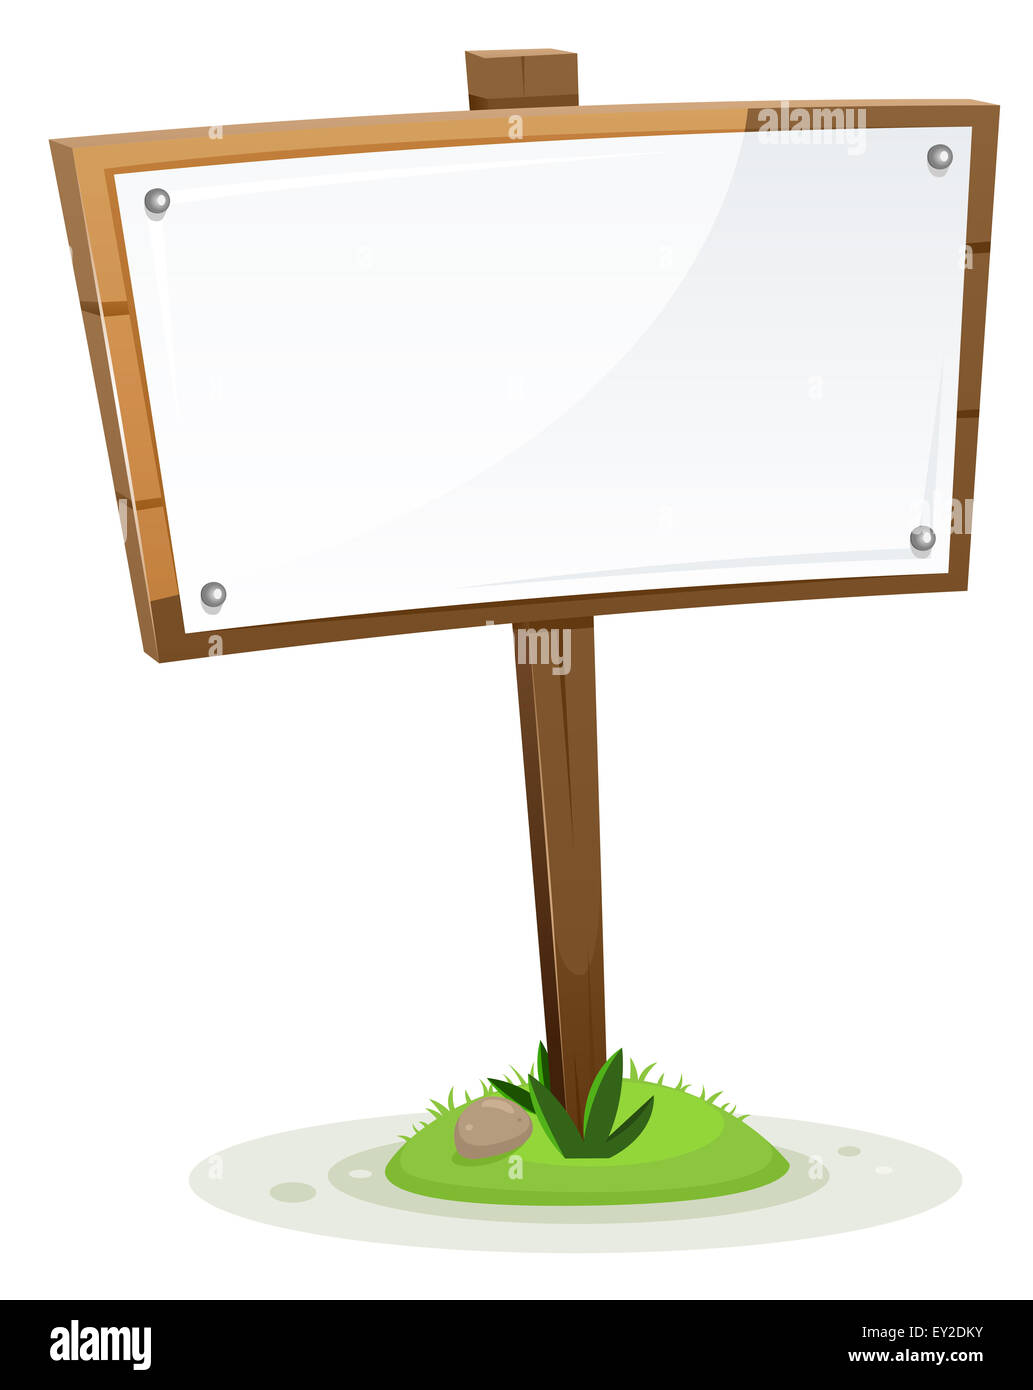 Illustrazione di una primavera o estate rurale cartoon in legno segno di legno con carta, isolati su sfondo bianco Foto Stock